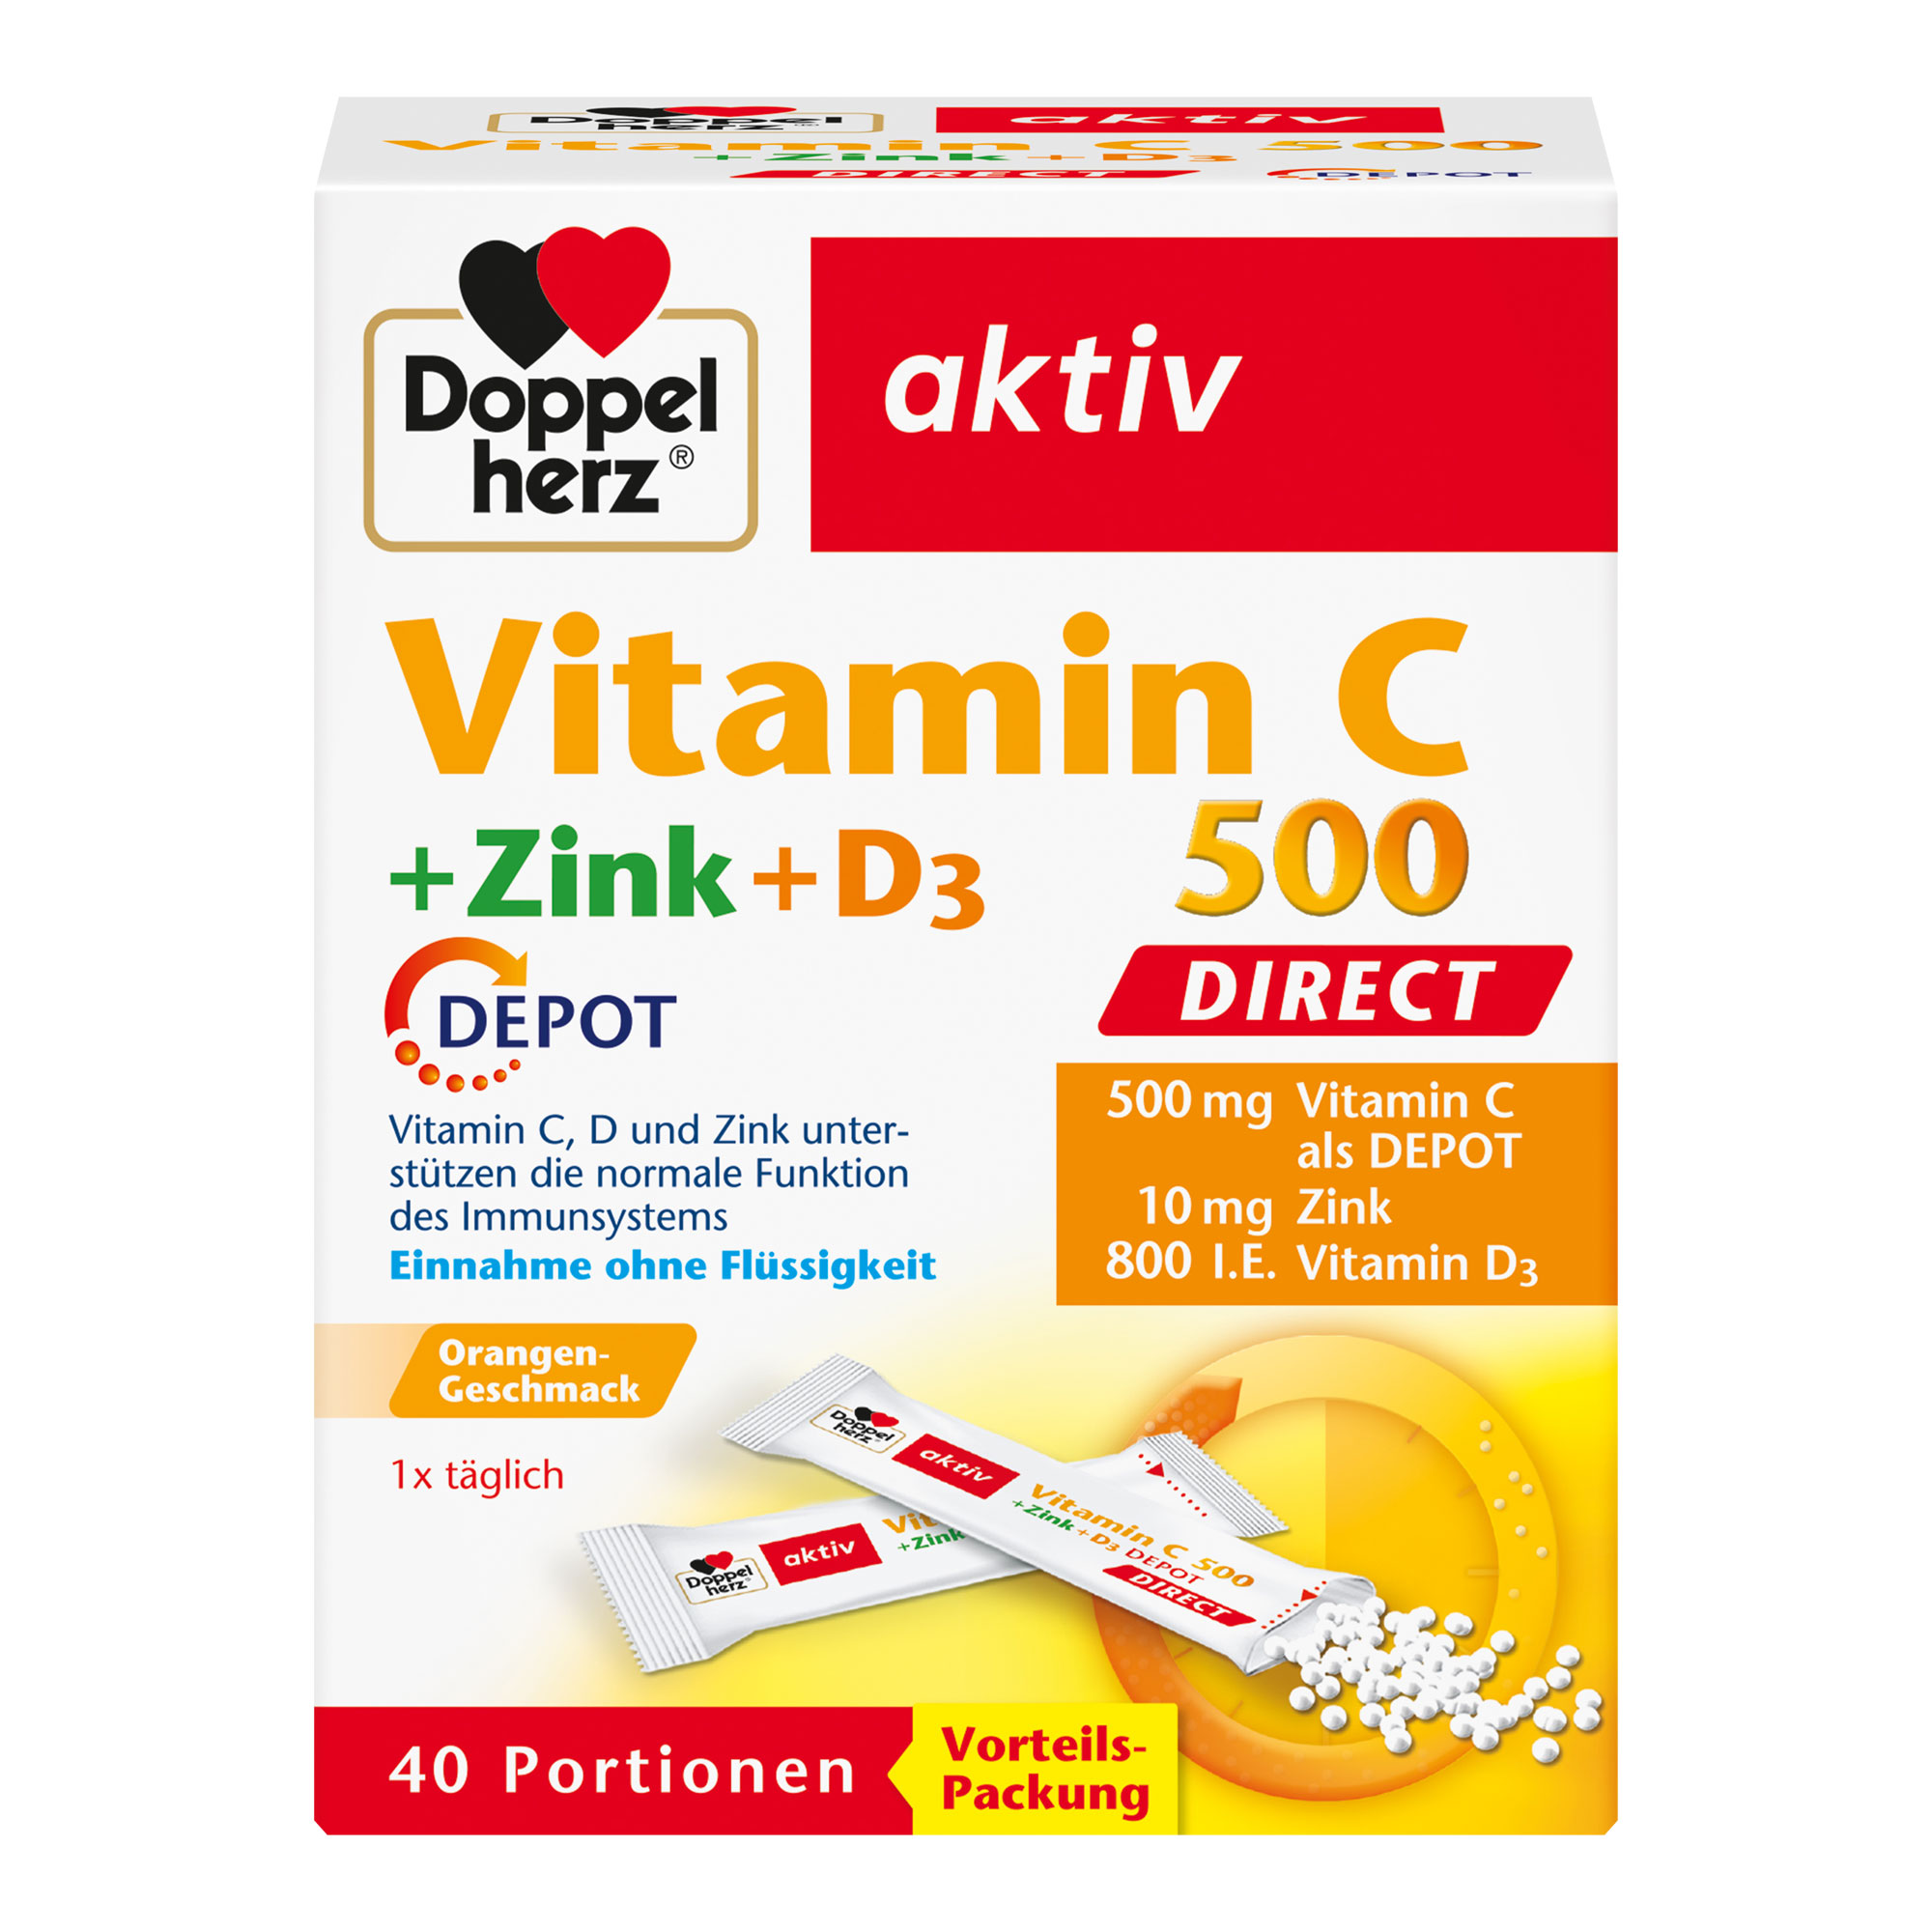 Nahrungsergänzungsmittel mit Vitamin C und D, Zink und Orangen-Geschmack.